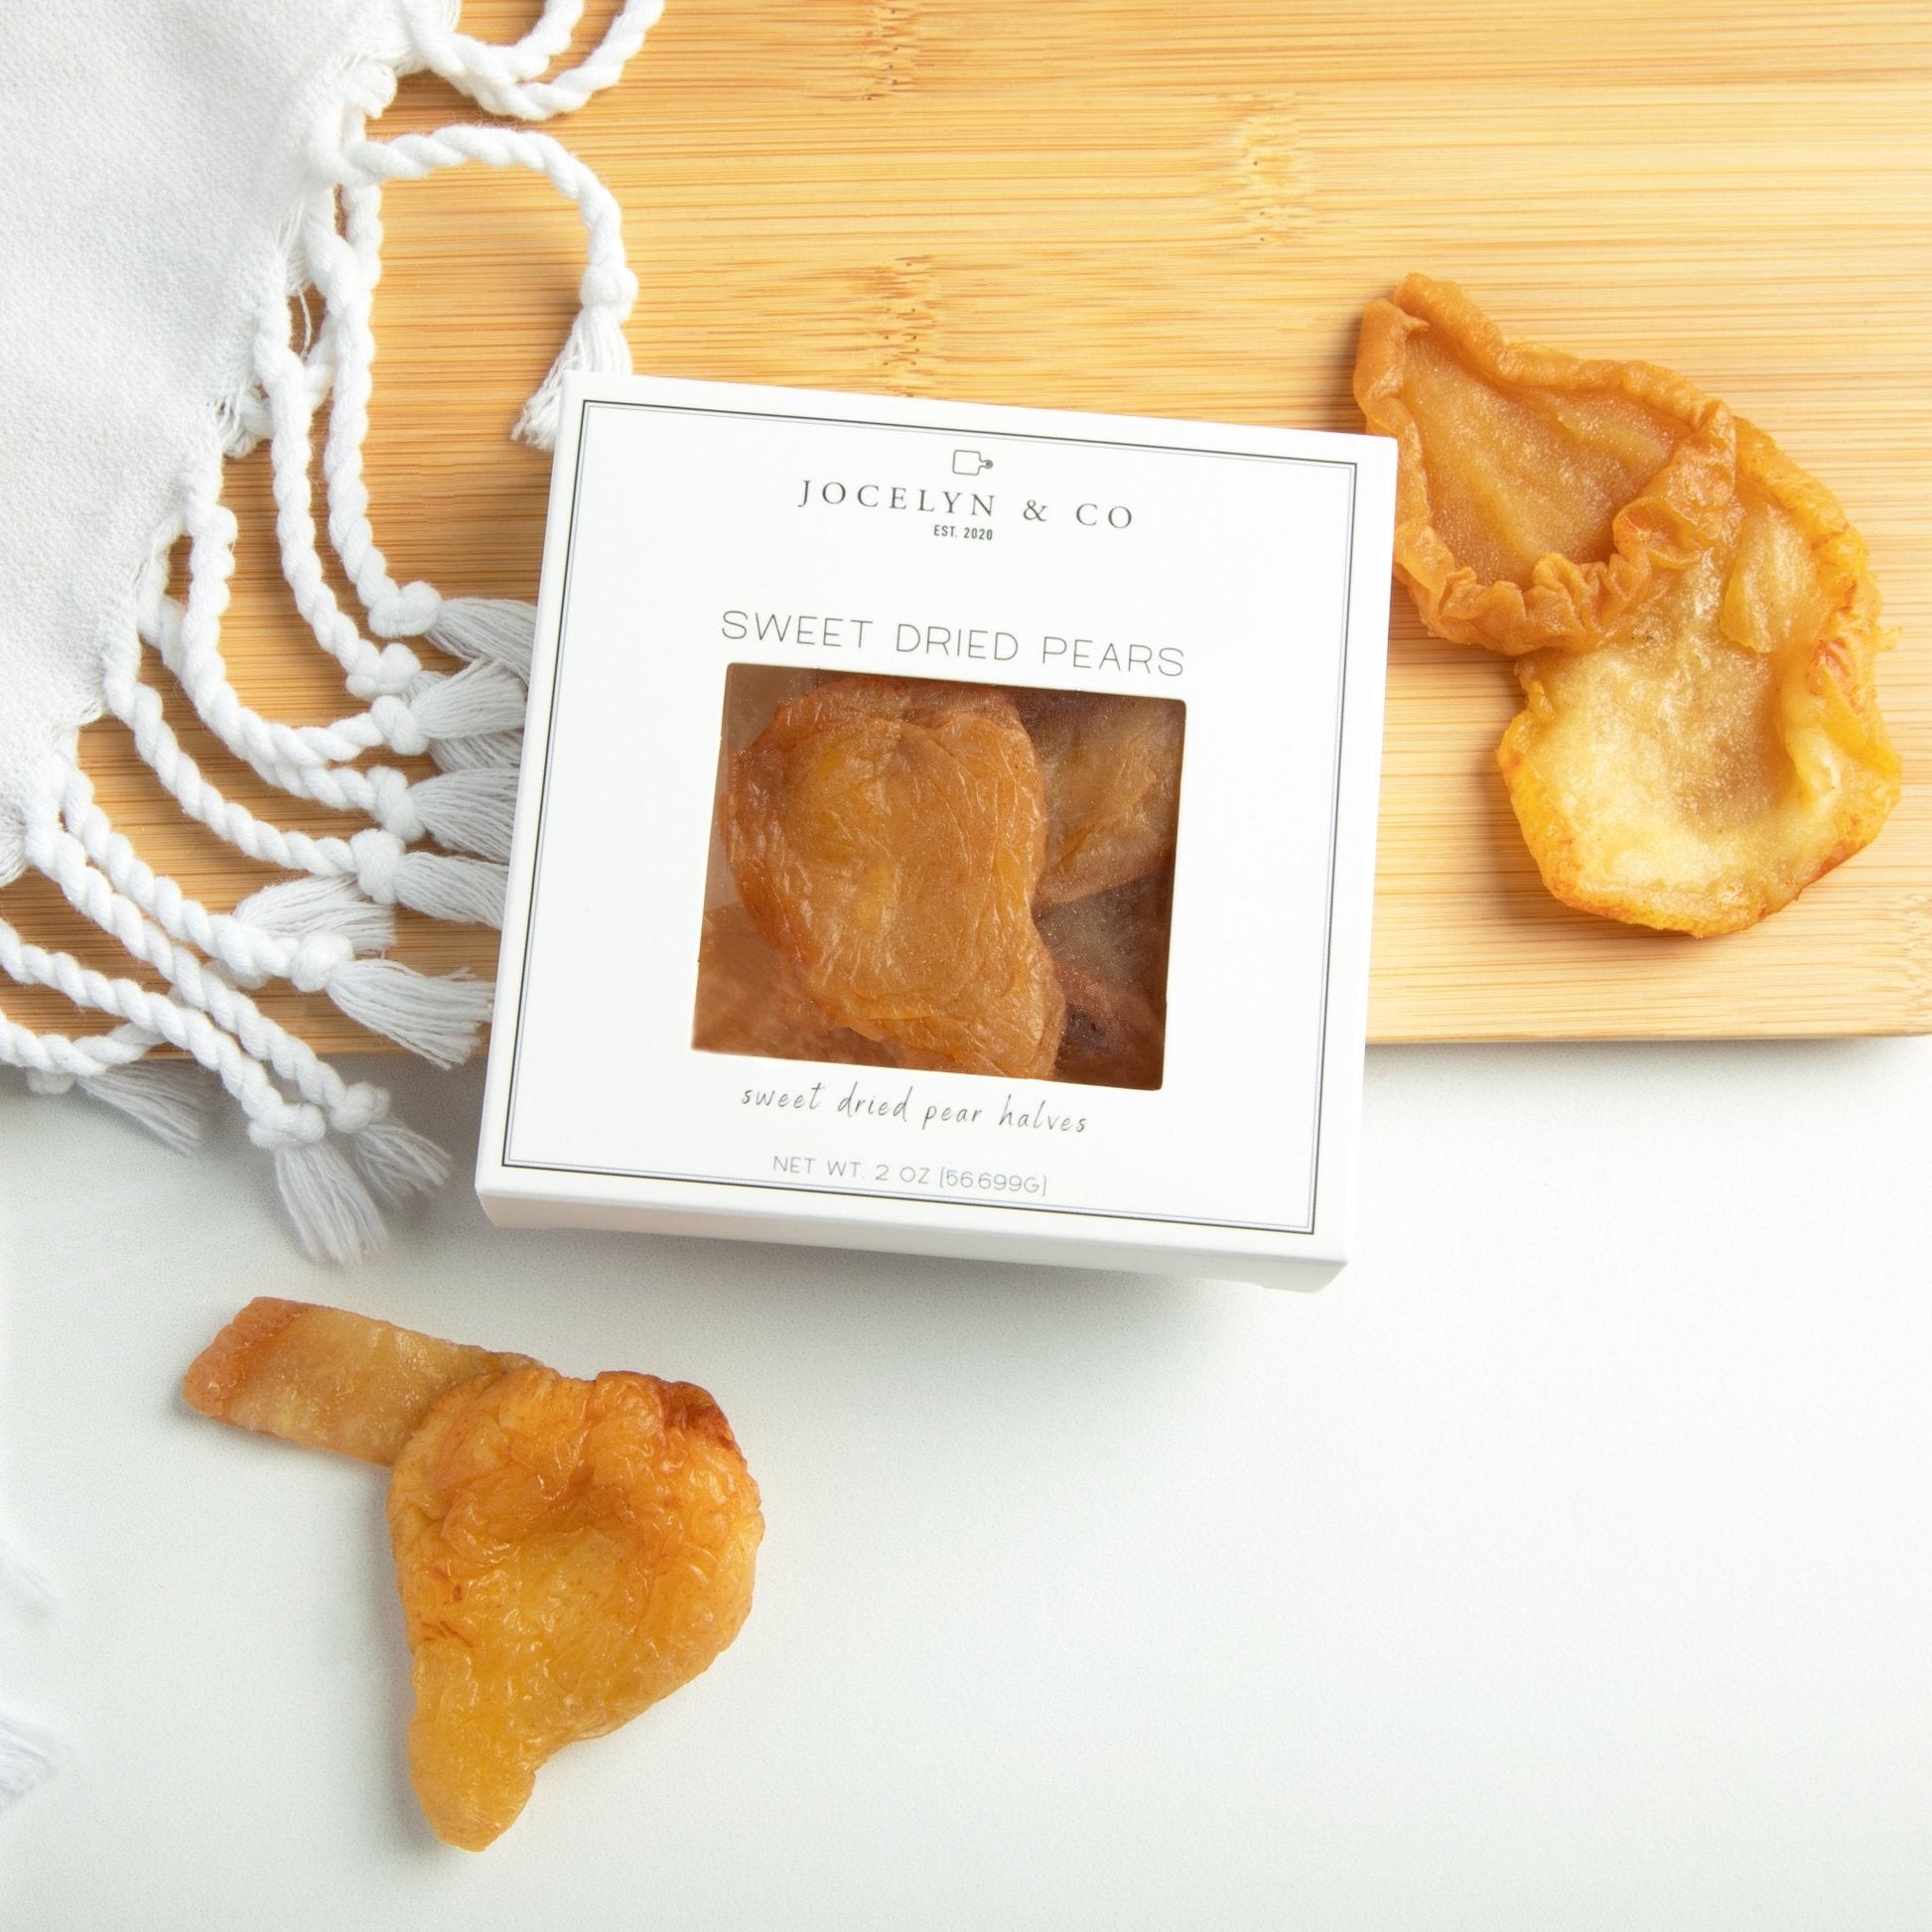 Sweet Dried Pears Box - Jocelyn & Co. Drop Ship